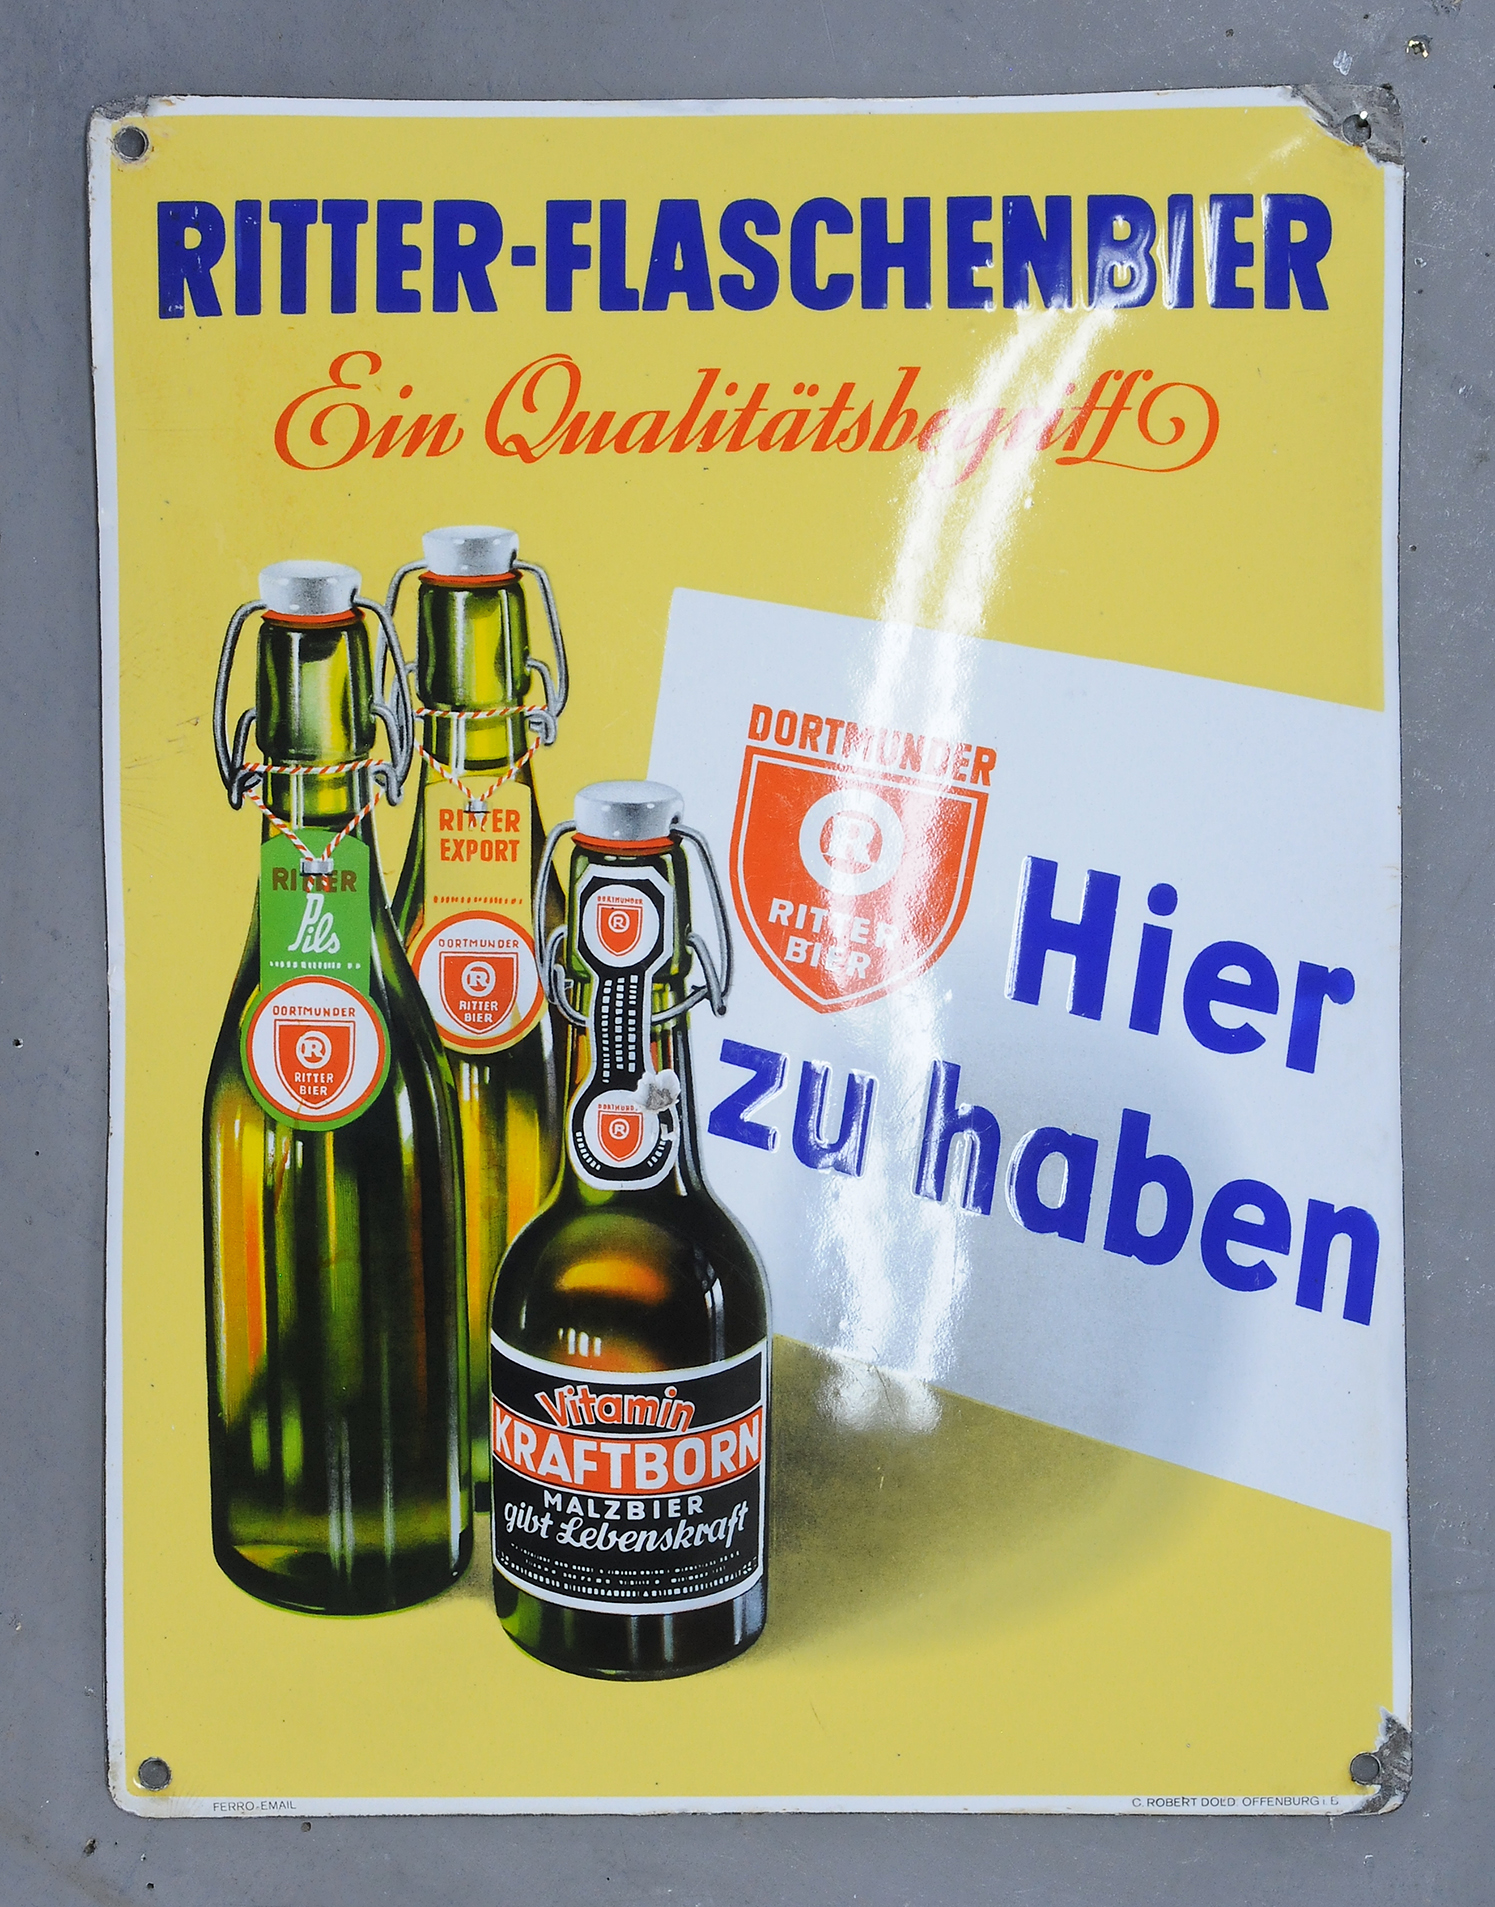 Ritter-Flaschenbier - Image 3 of 3